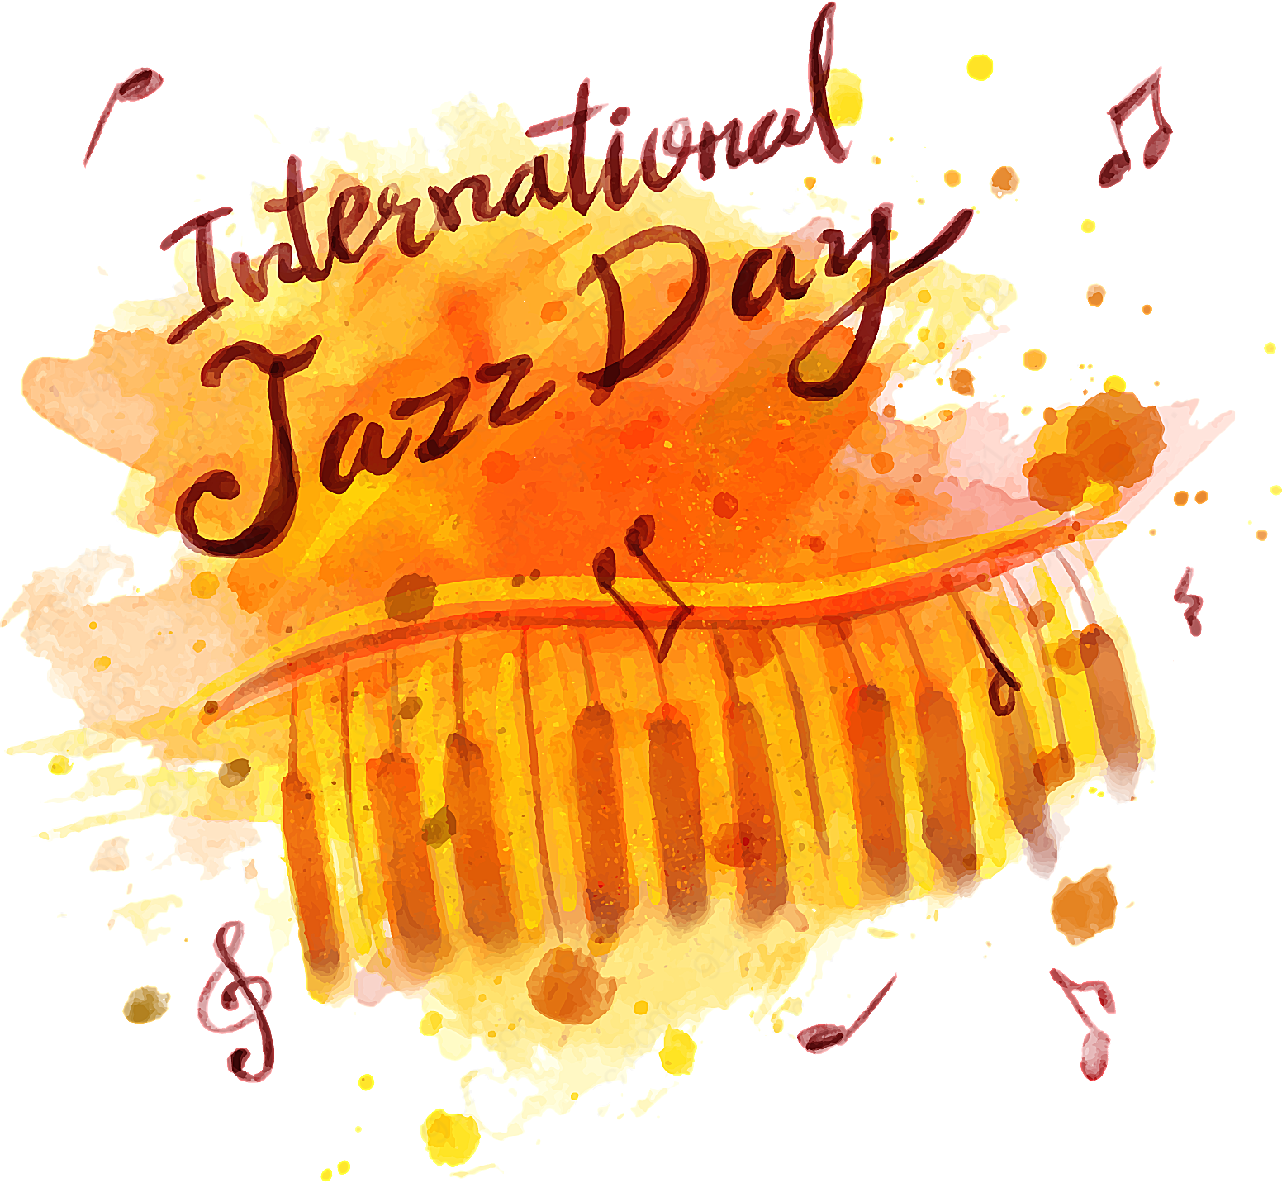 国际爵士乐日矢量节日其它